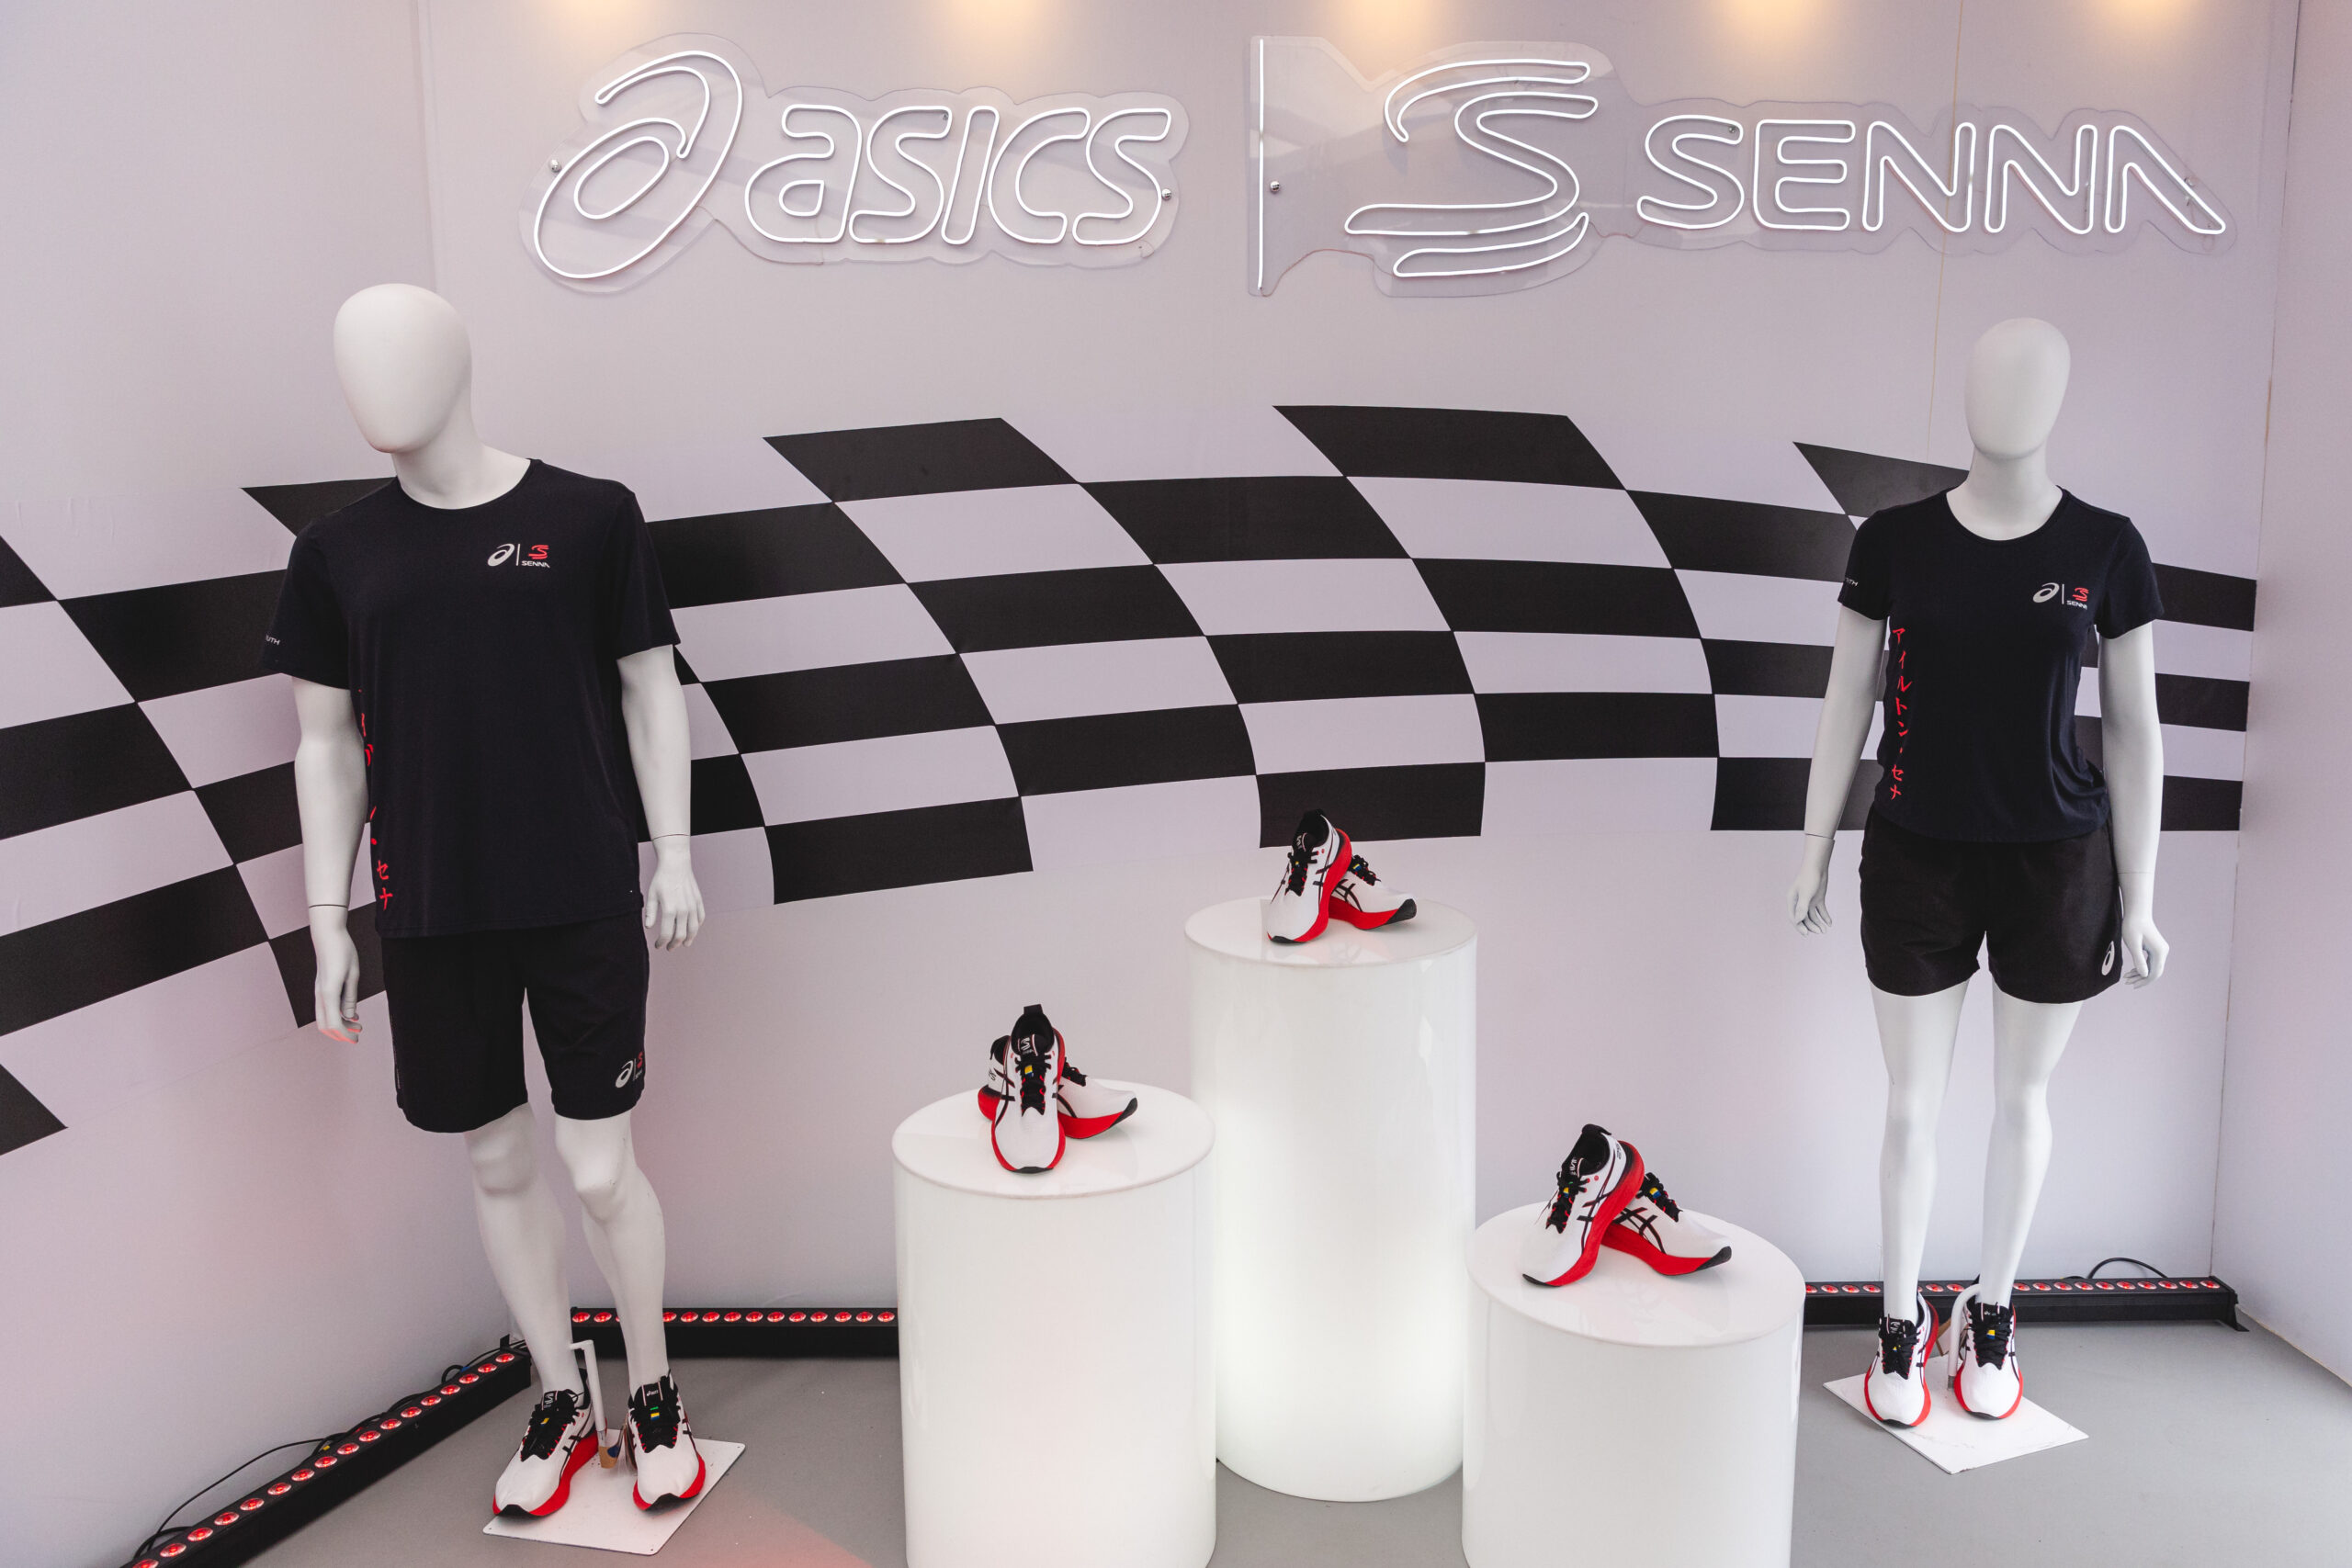 Nova coleção de tênis e vestuário da Asics em parceria com a Marca Senna ganha as lojas após evento de lançamento